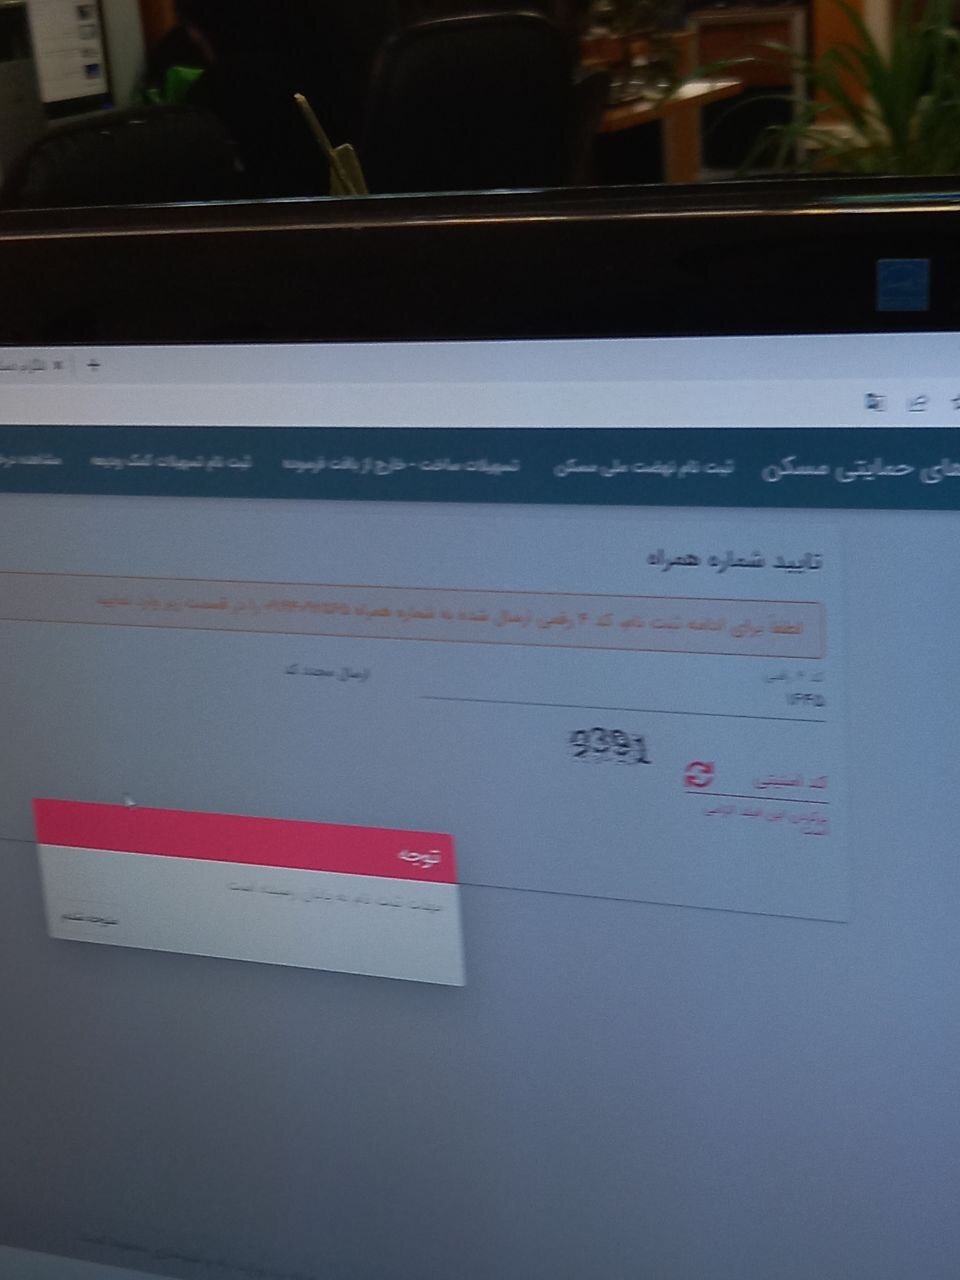 خرابی سایت نهضت ملی مسکن